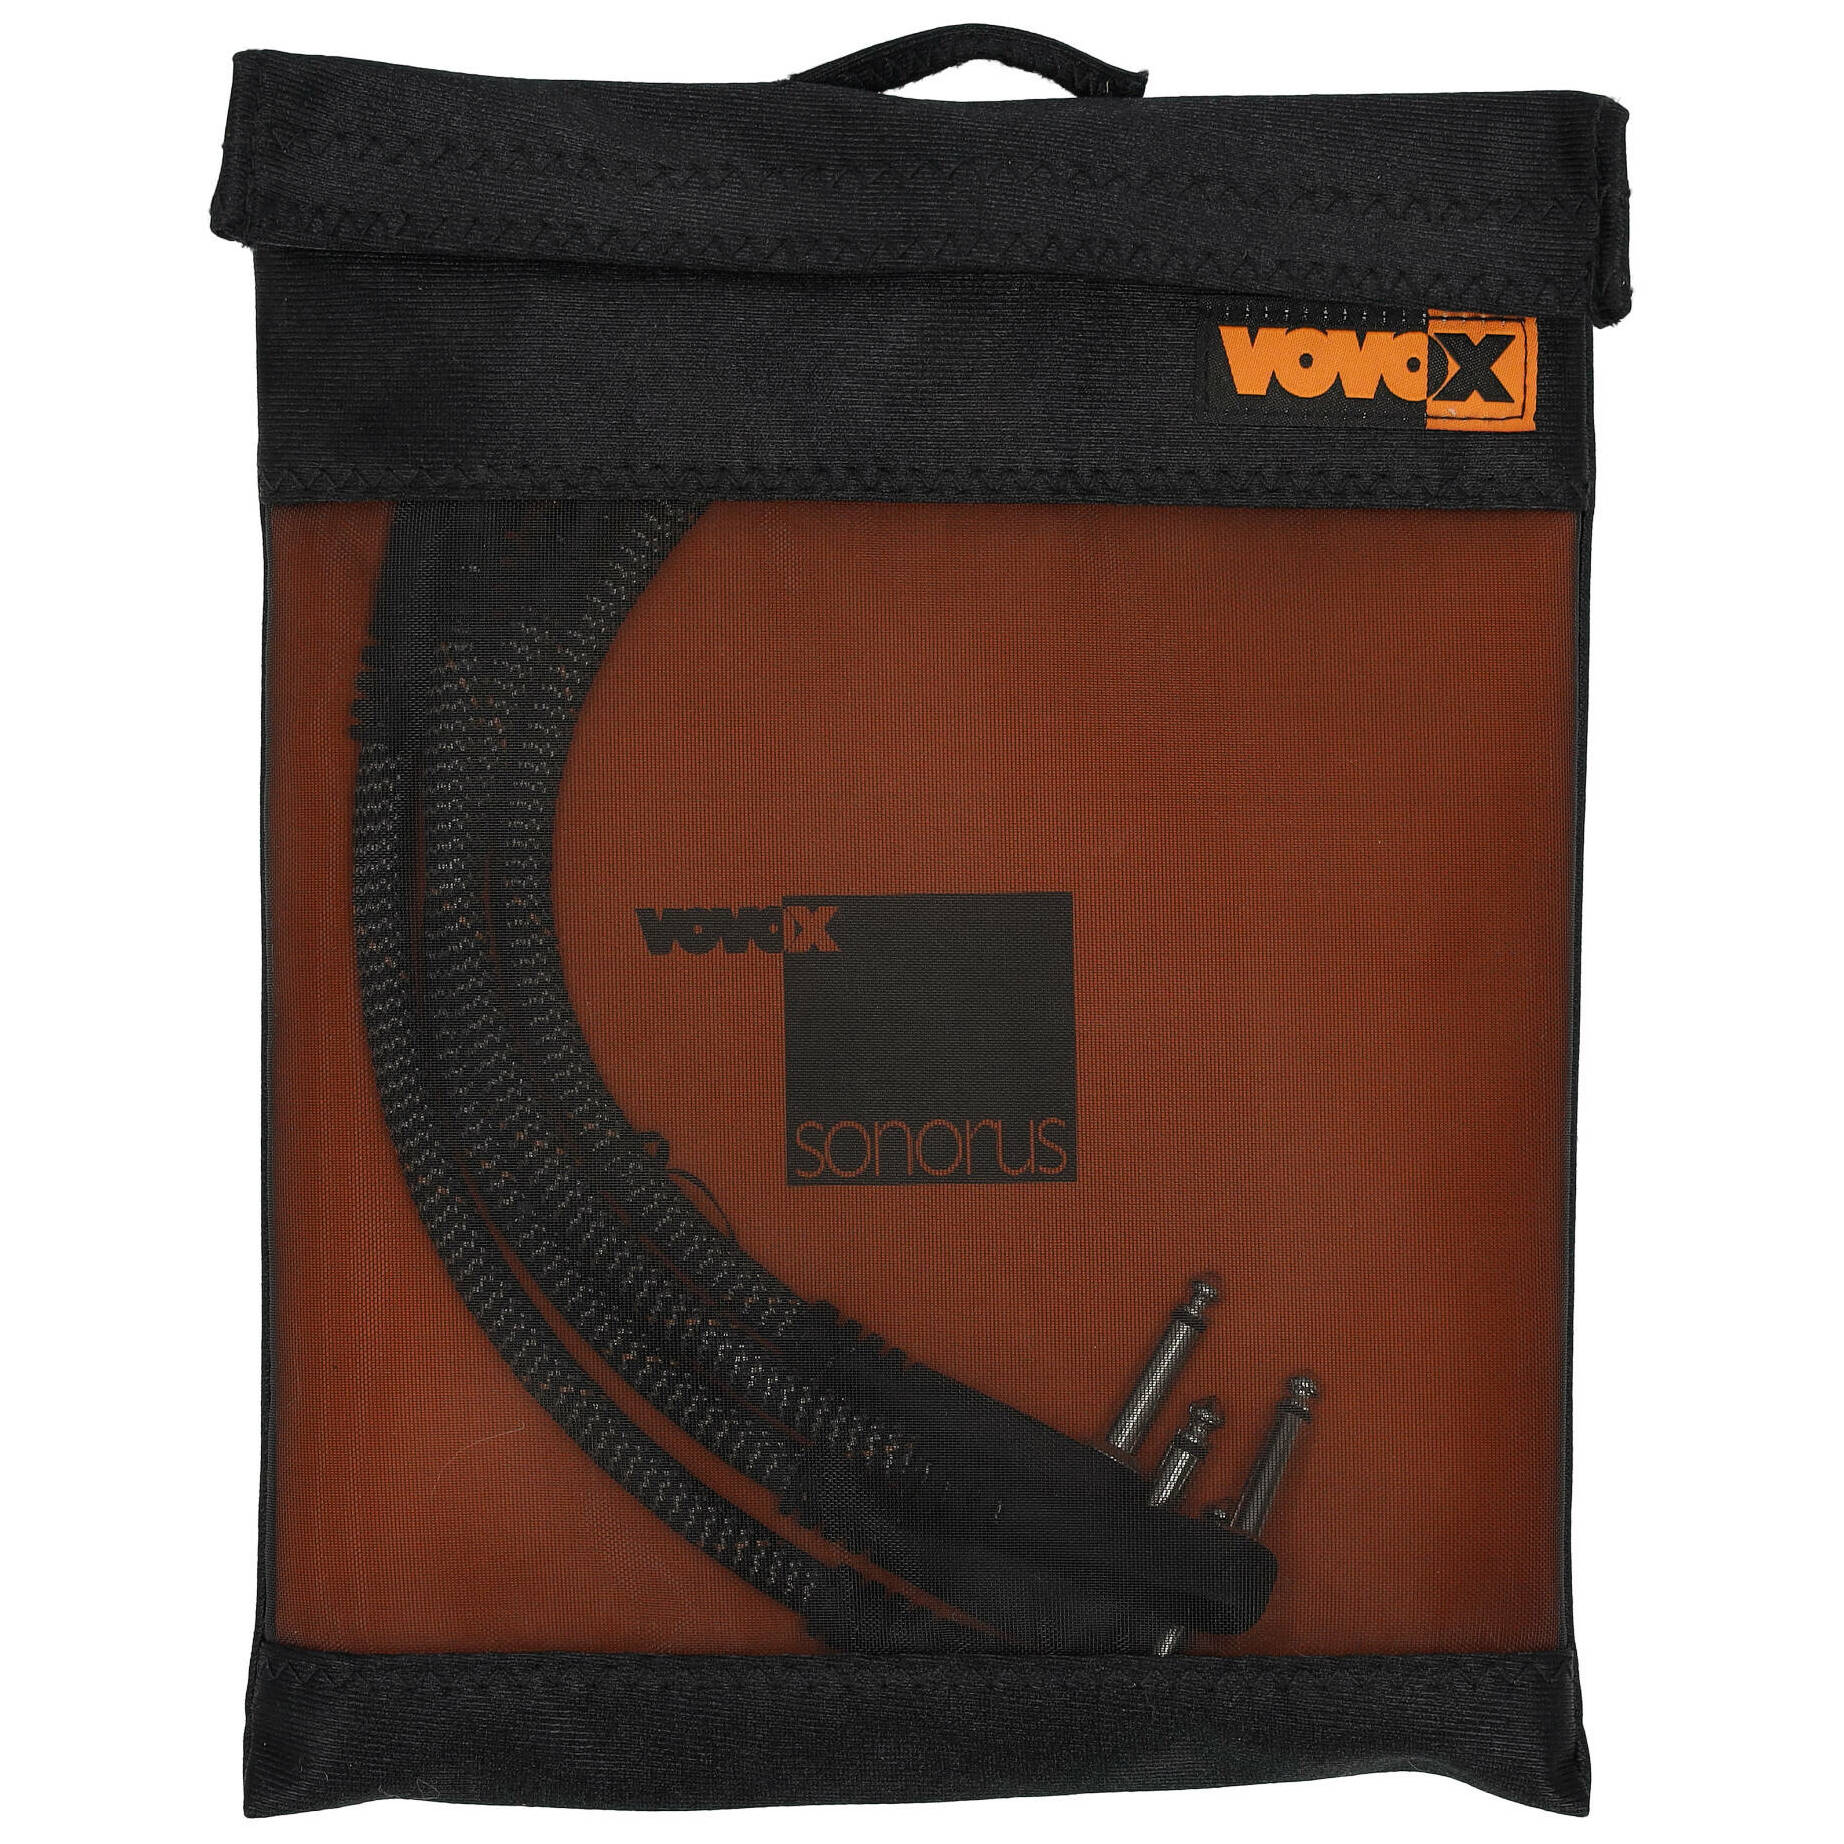 Vovox sonorus patch 25cm Winkelklinke 4er Set